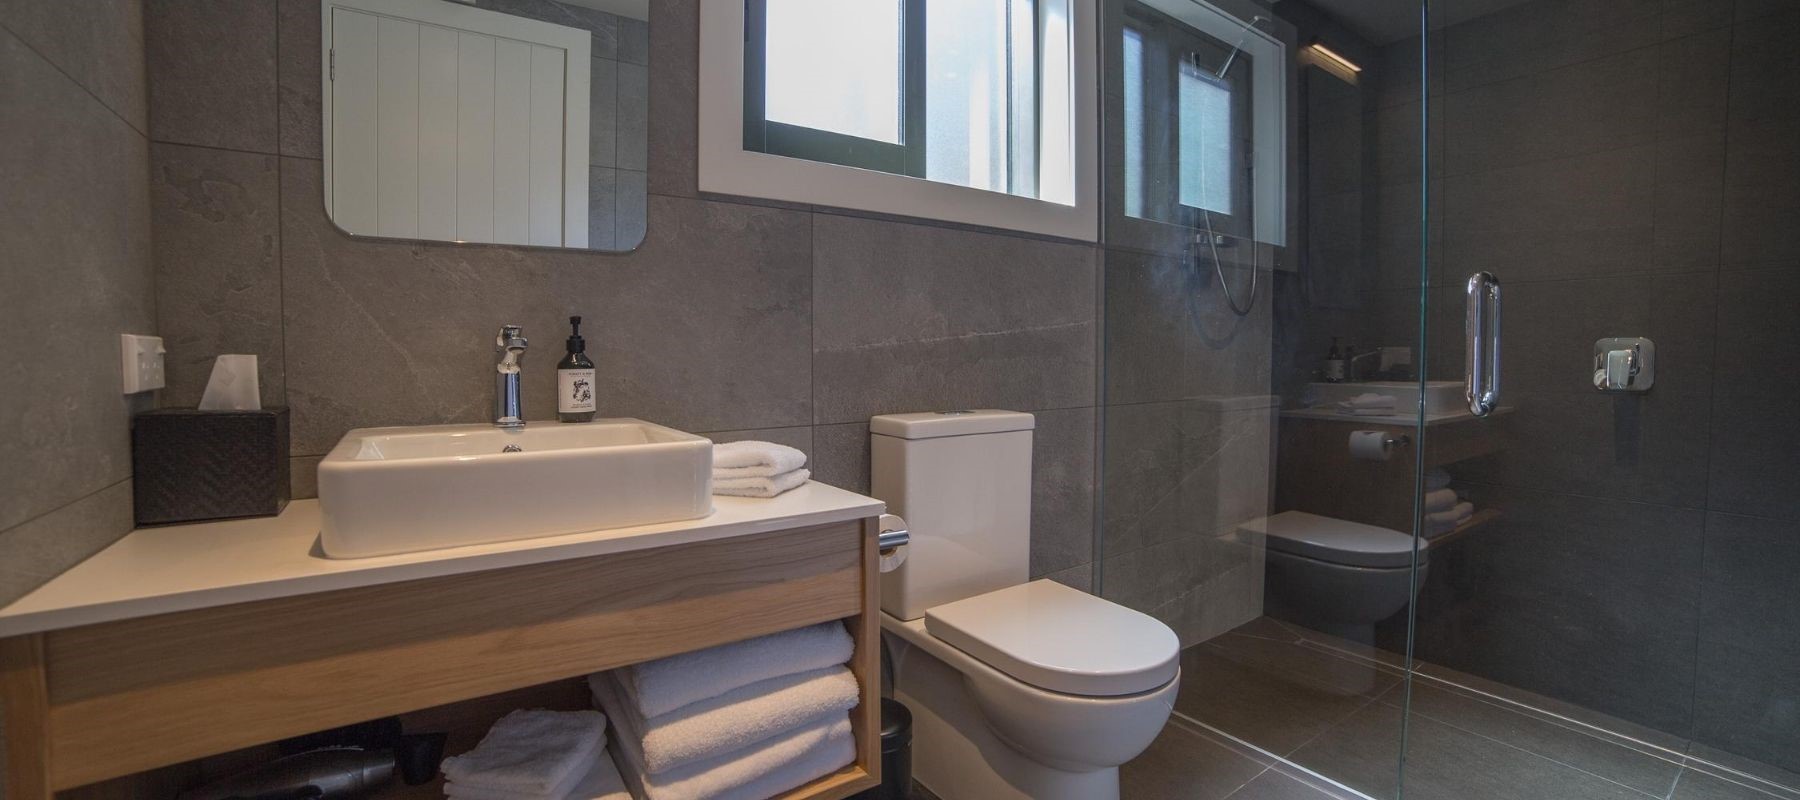 Milford Sound Lodge - Bathroom